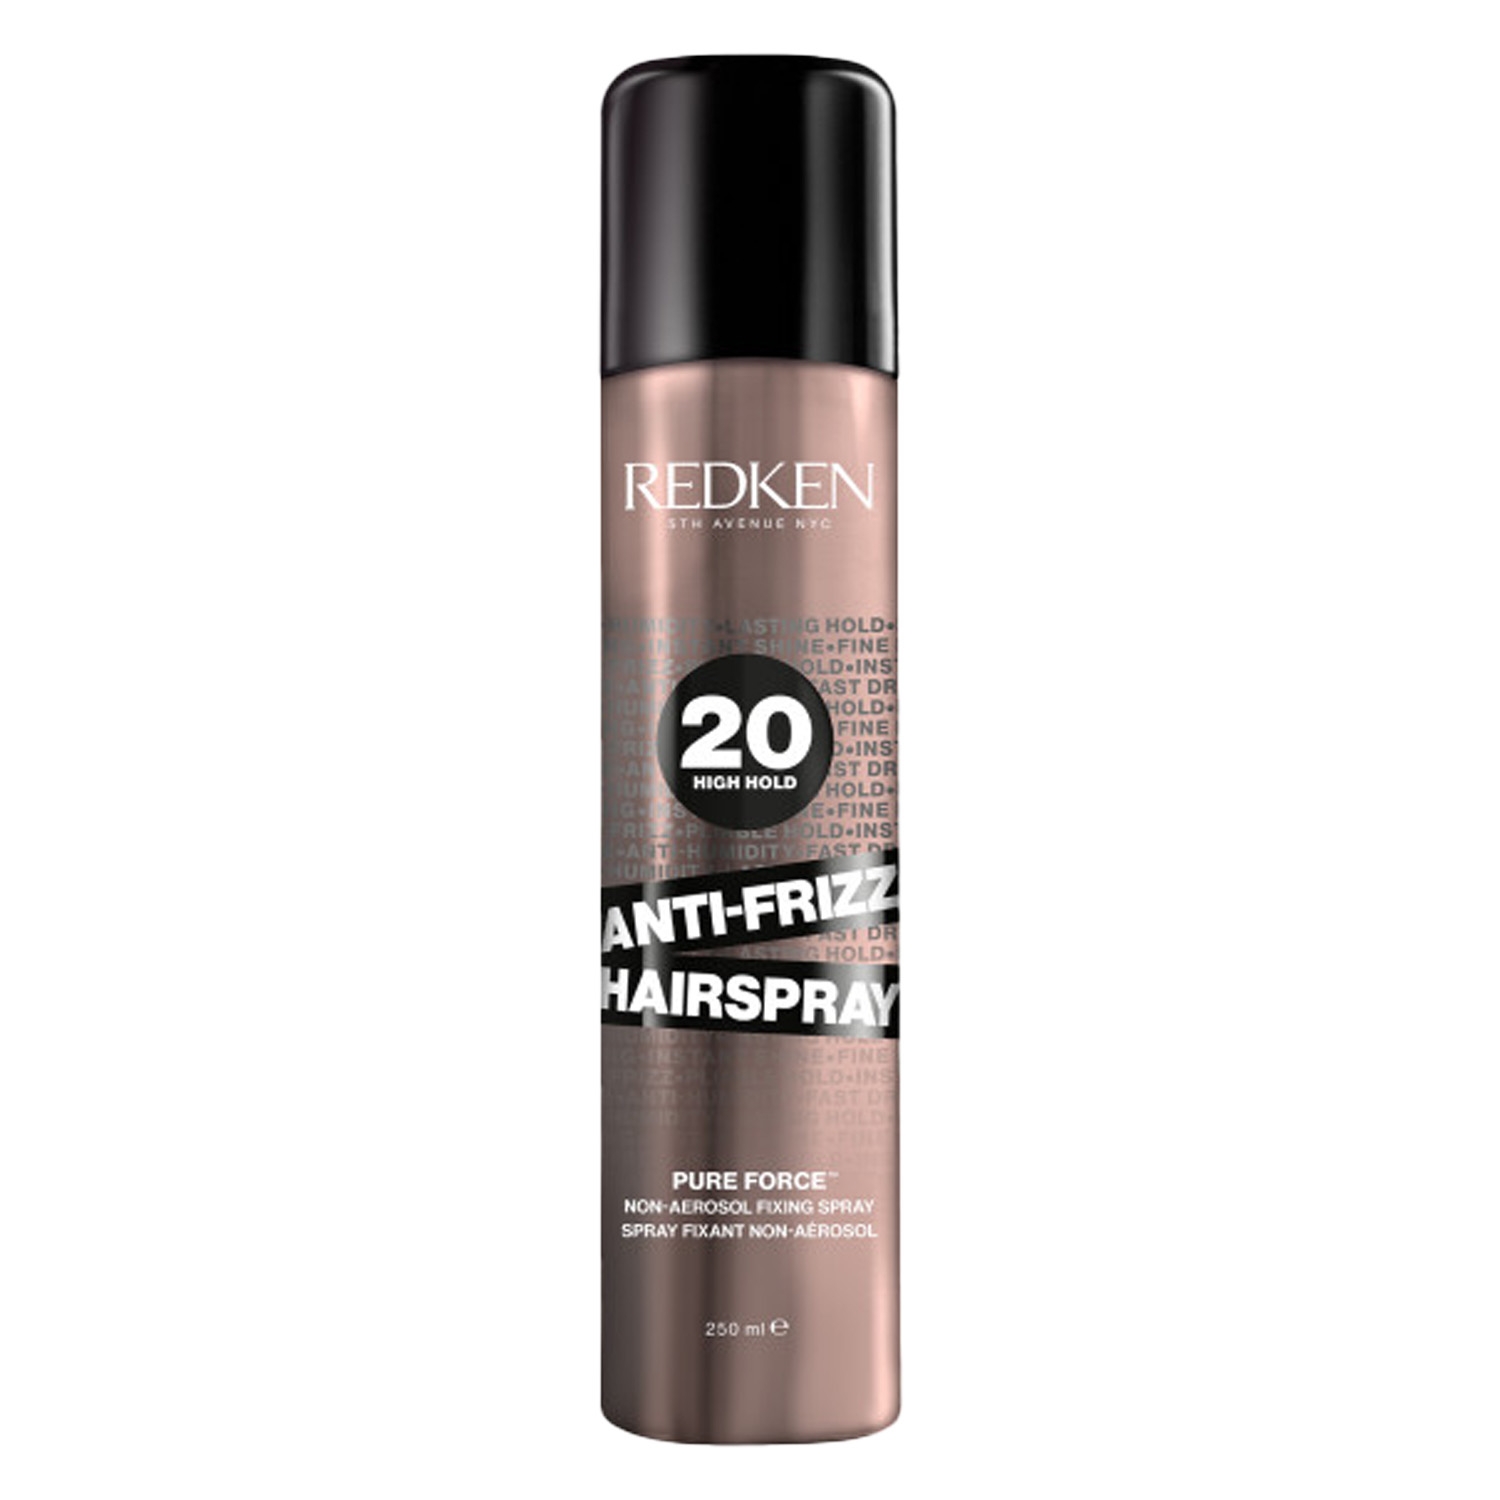 Produktbild von Redken Styling - Anti-Frizz Hairspray